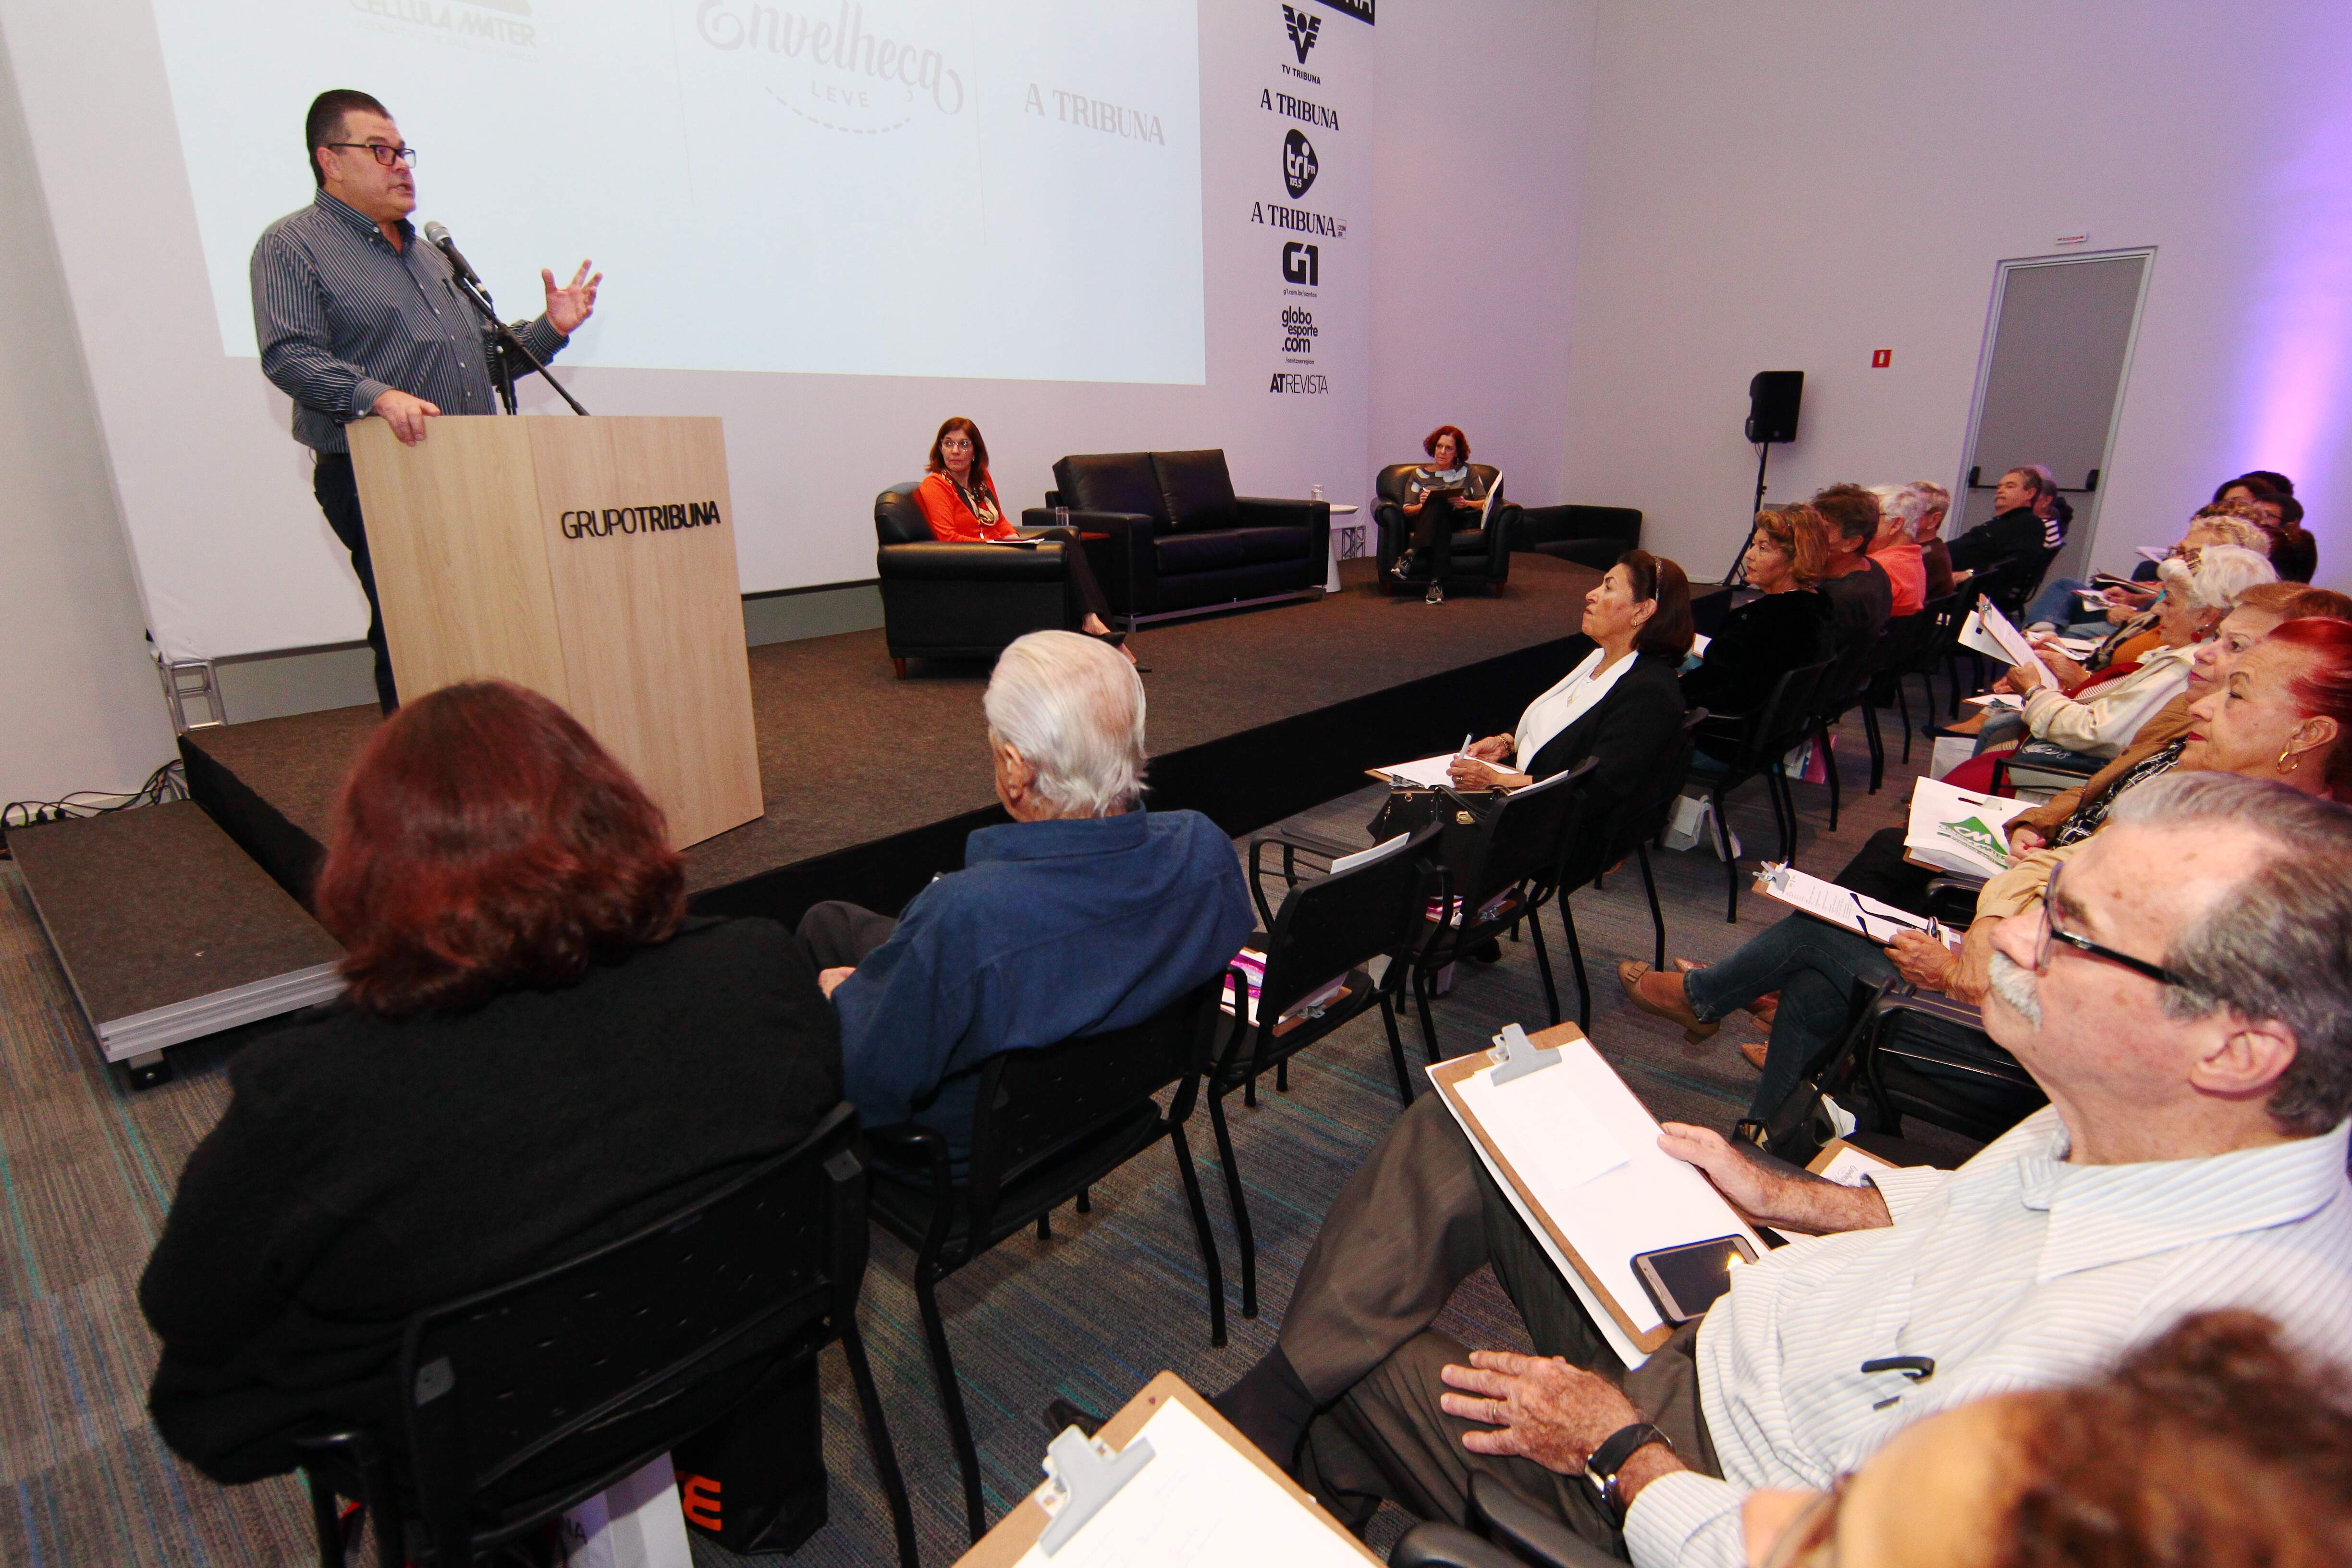 Ciclo de palestras, com quatro temas, ocorre no auditório TV Tribuna, é aberto ao público e gratuito